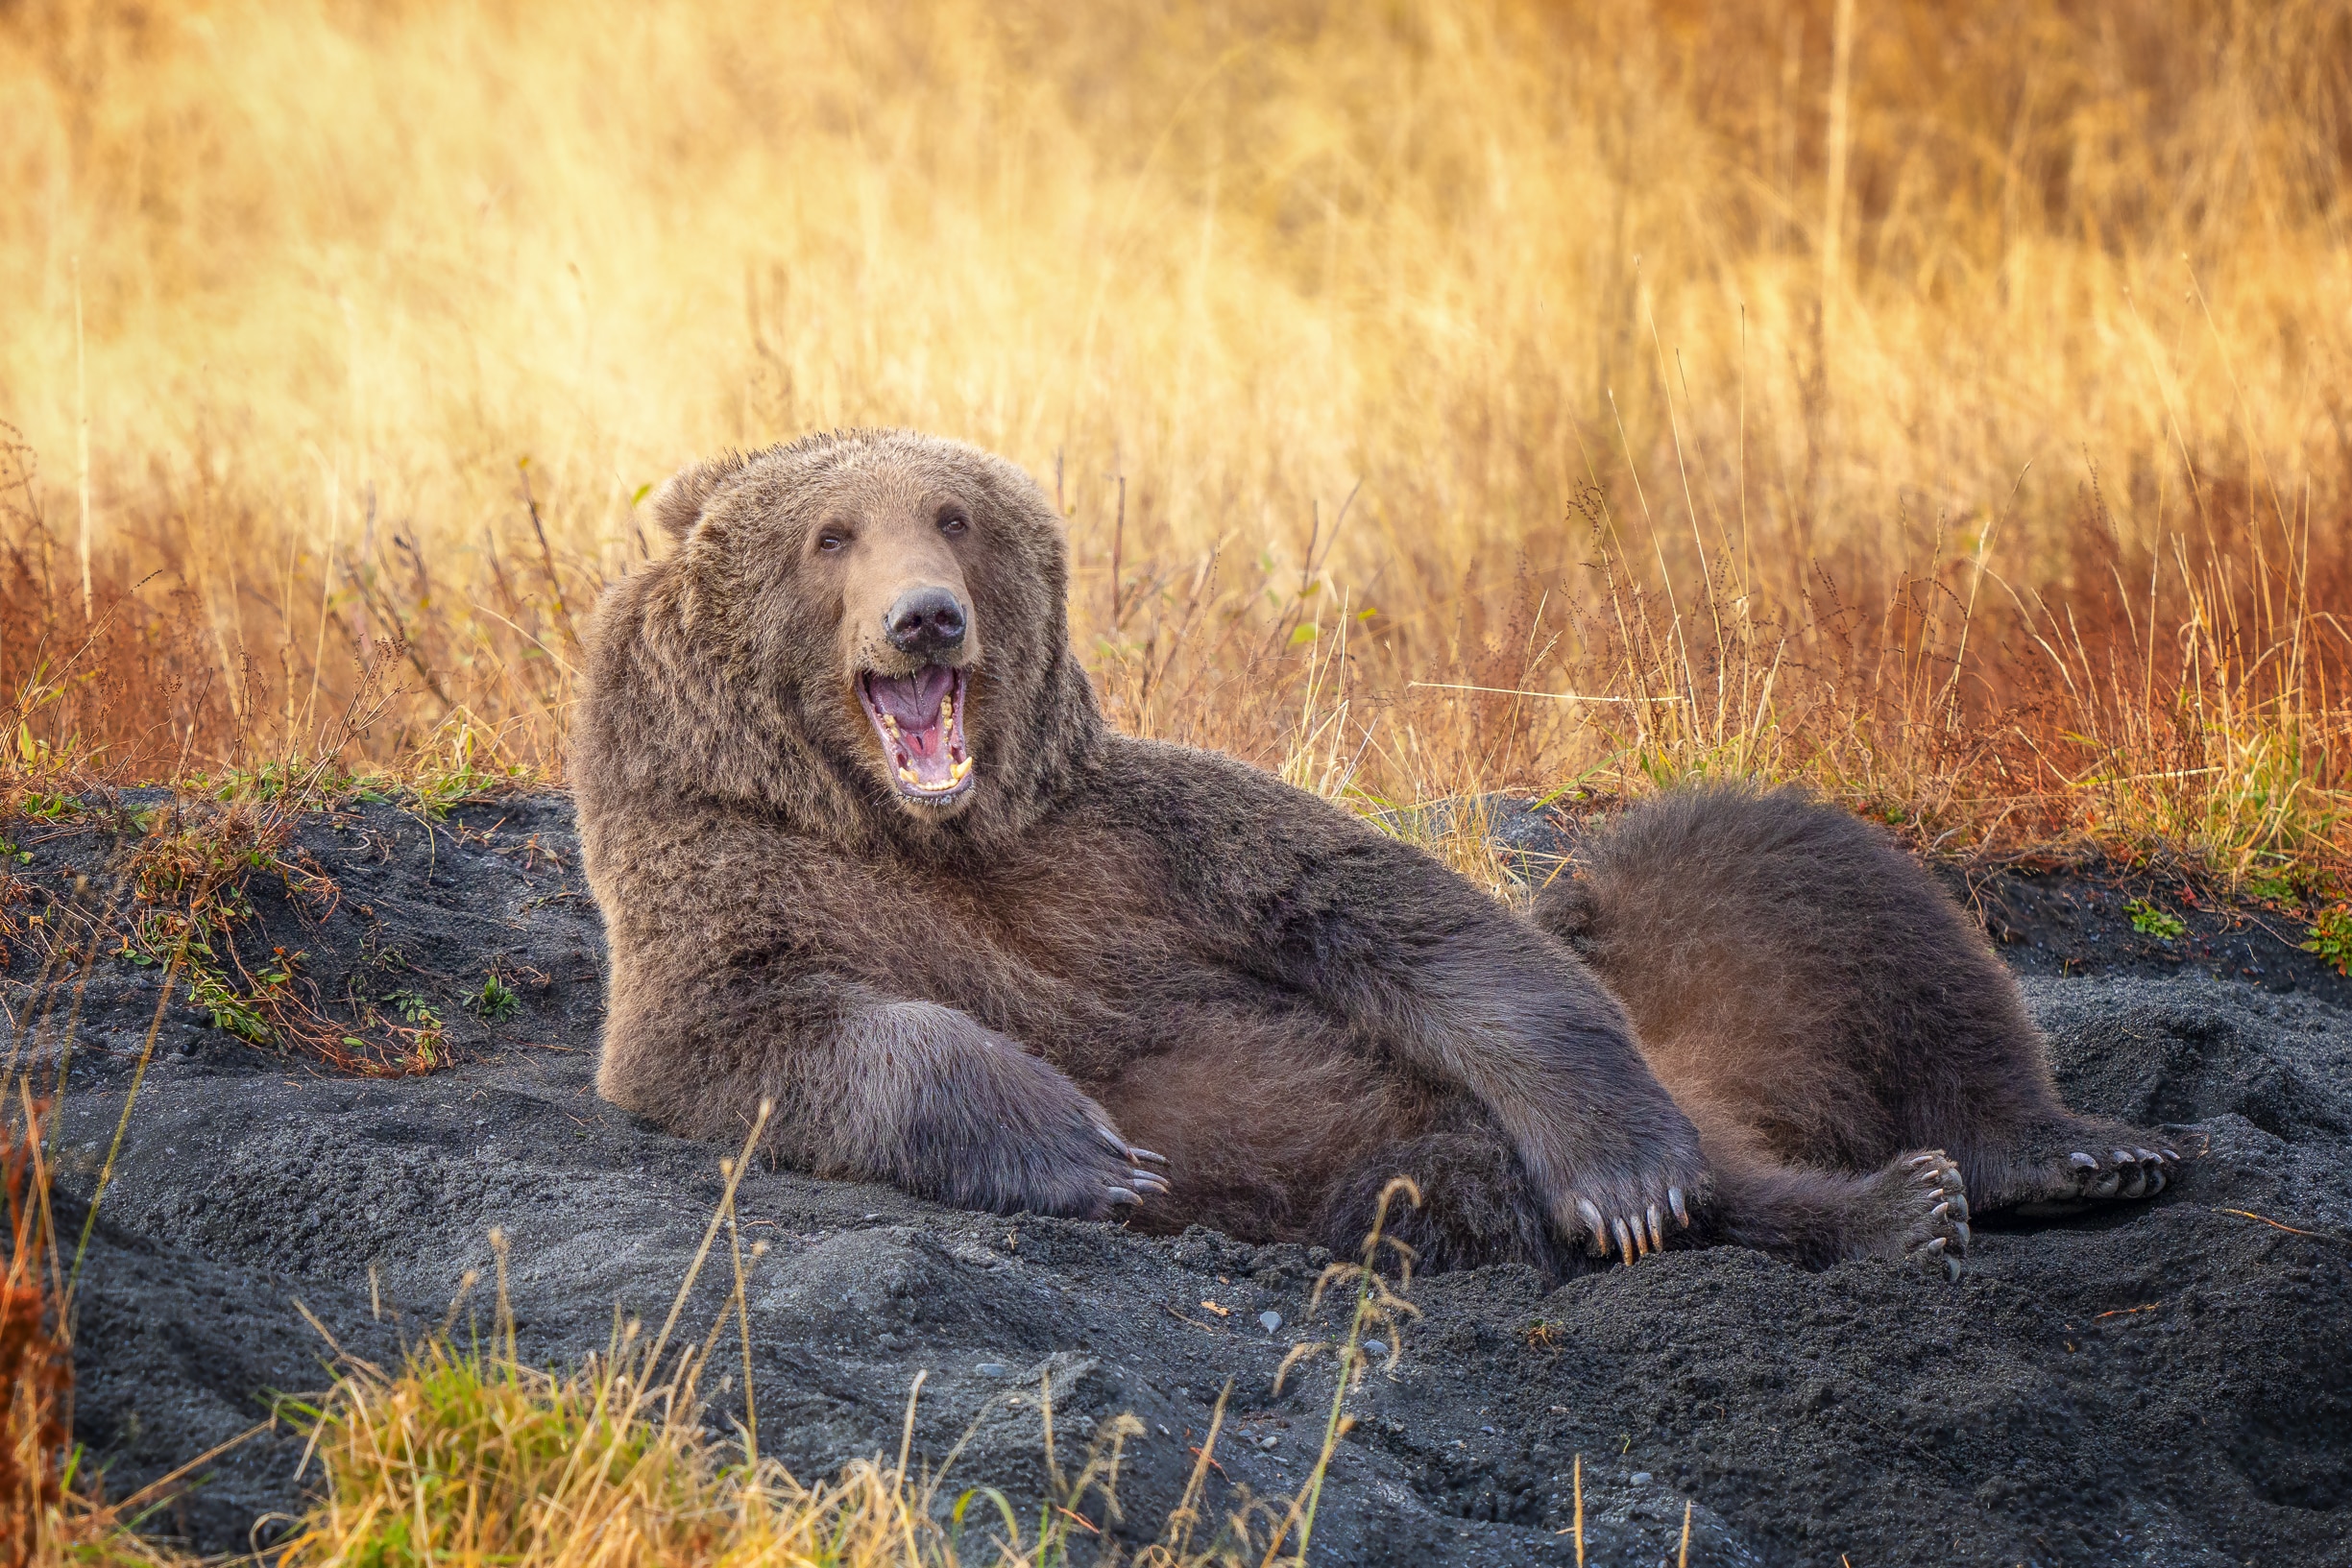 Bear laughing